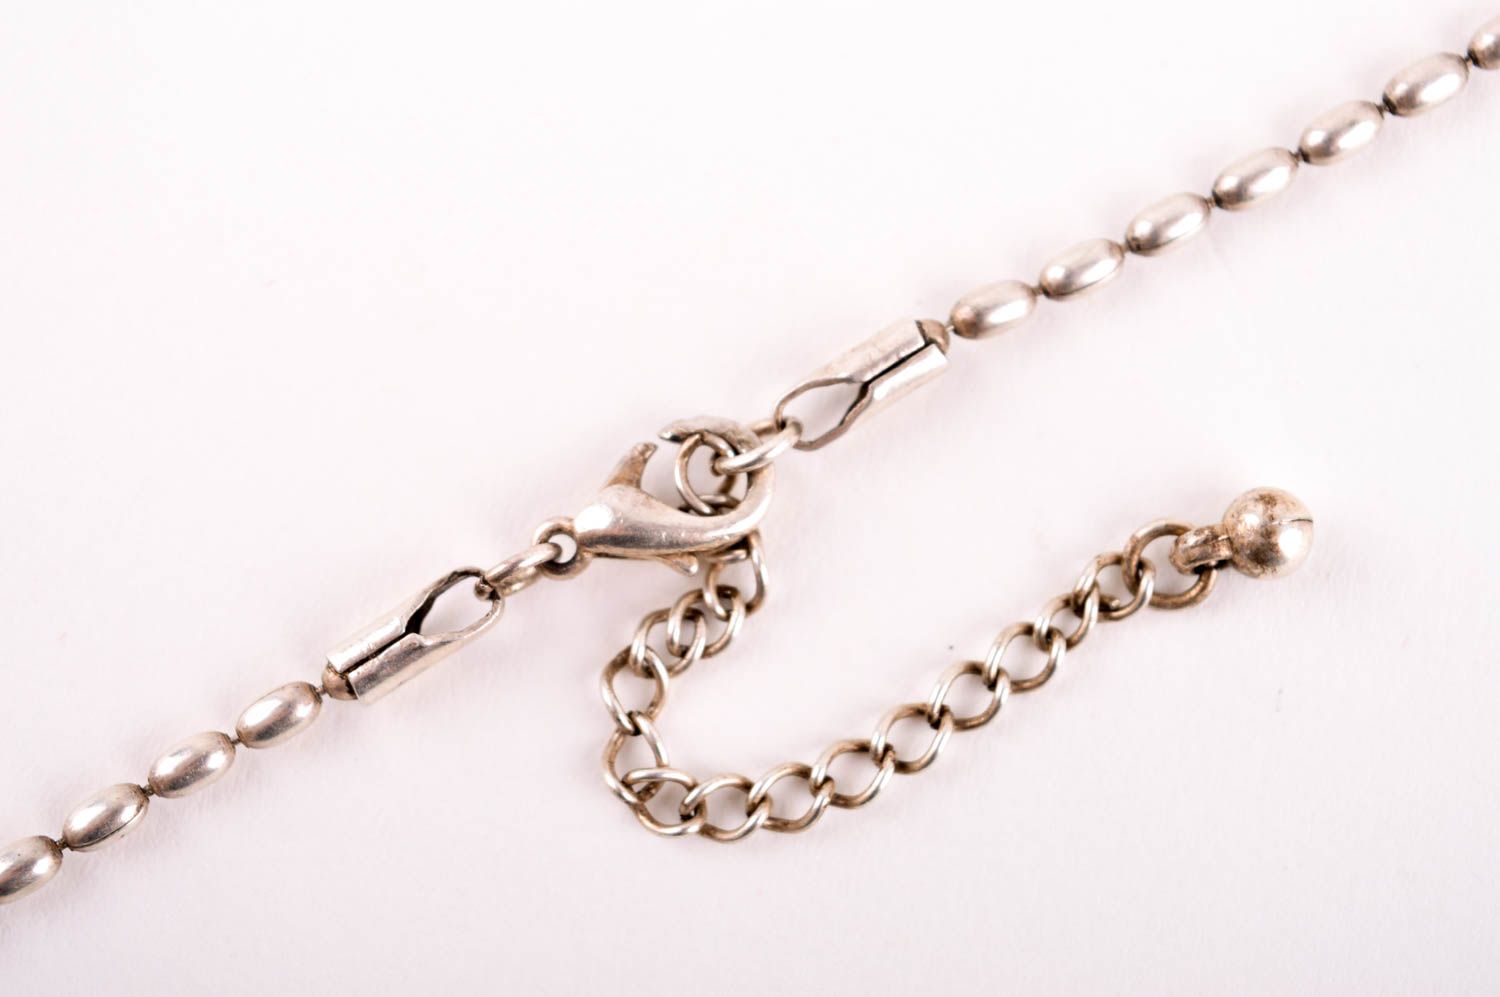 Handmade pendant designer pendant beaded pendant for women unusual gift photo 4